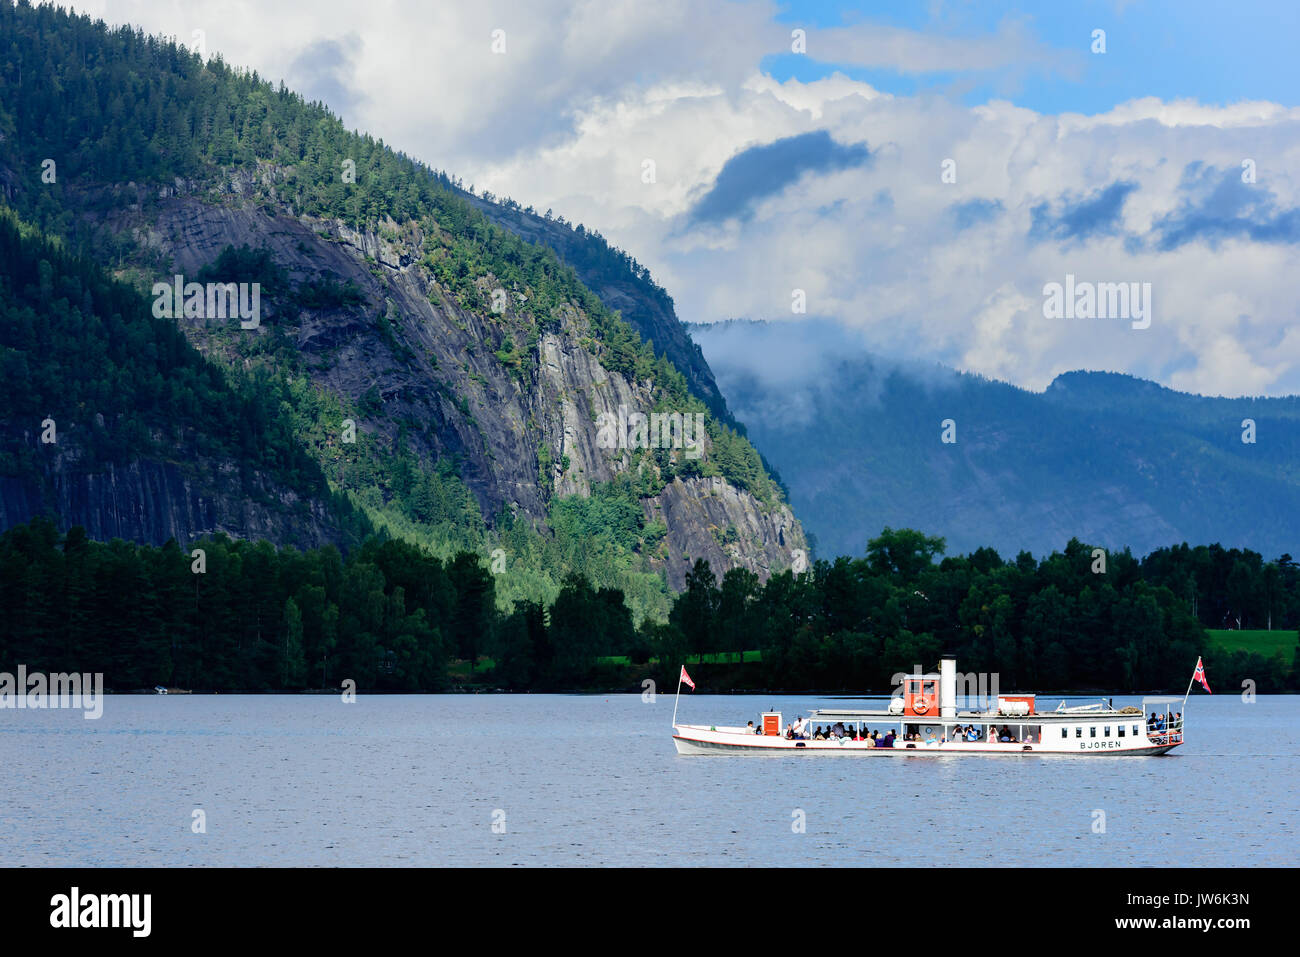 Bygland, Noruega - Agosto 1, 2017: Viaje documental de turistas montando el museo de barcos de vapor Bjoren en lago de montaña. Paisaje oscuro con la montaña Foto de stock